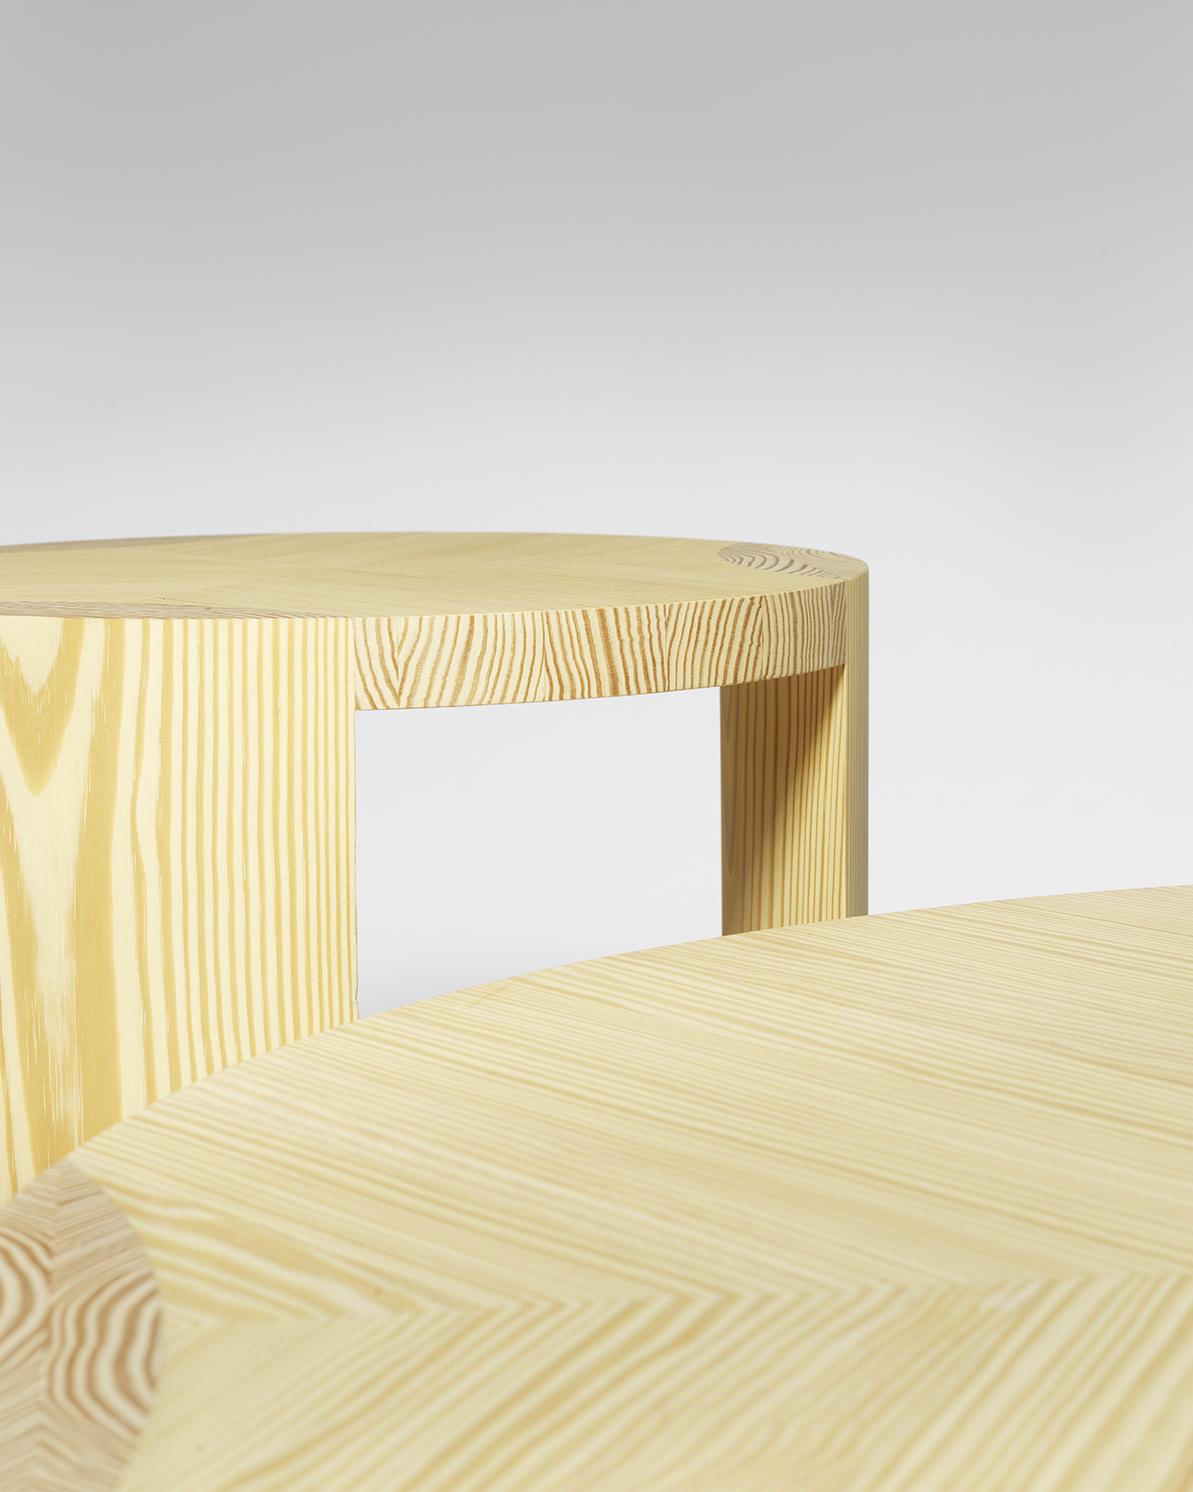 Une série de tables basses rondes dont la sobriété, le grain du bois et la jonction entre le pied et le plateau déterminent la forme et les détails.

Ces tables basses sont disponibles en deux matériaux différents. Un chêne de couleur bleutée et un